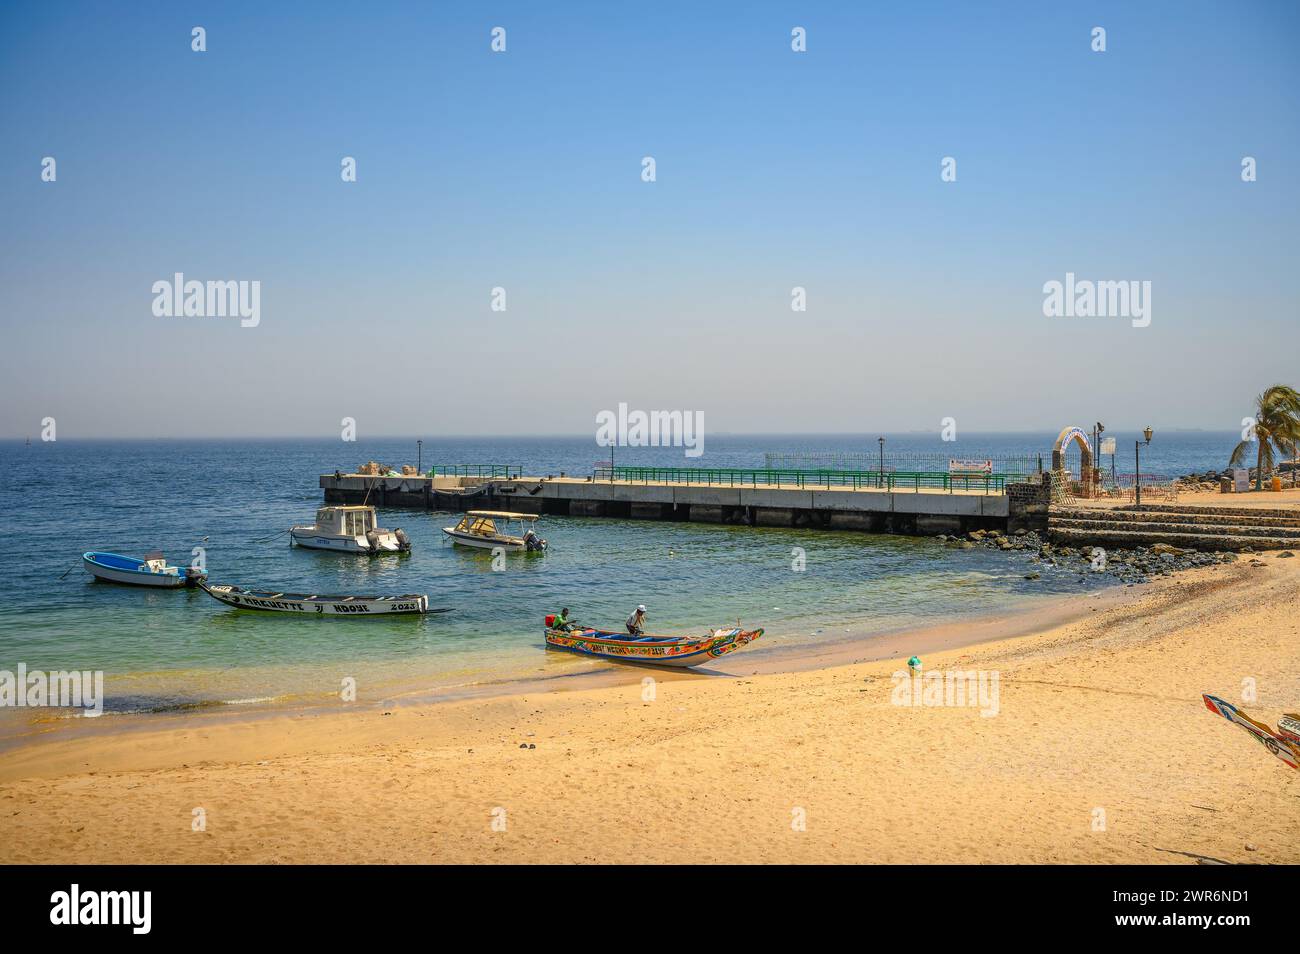 Plage calme avec des bateaux amarrés et une jetée sur l'île de Goree, Sénégal Banque D'Images